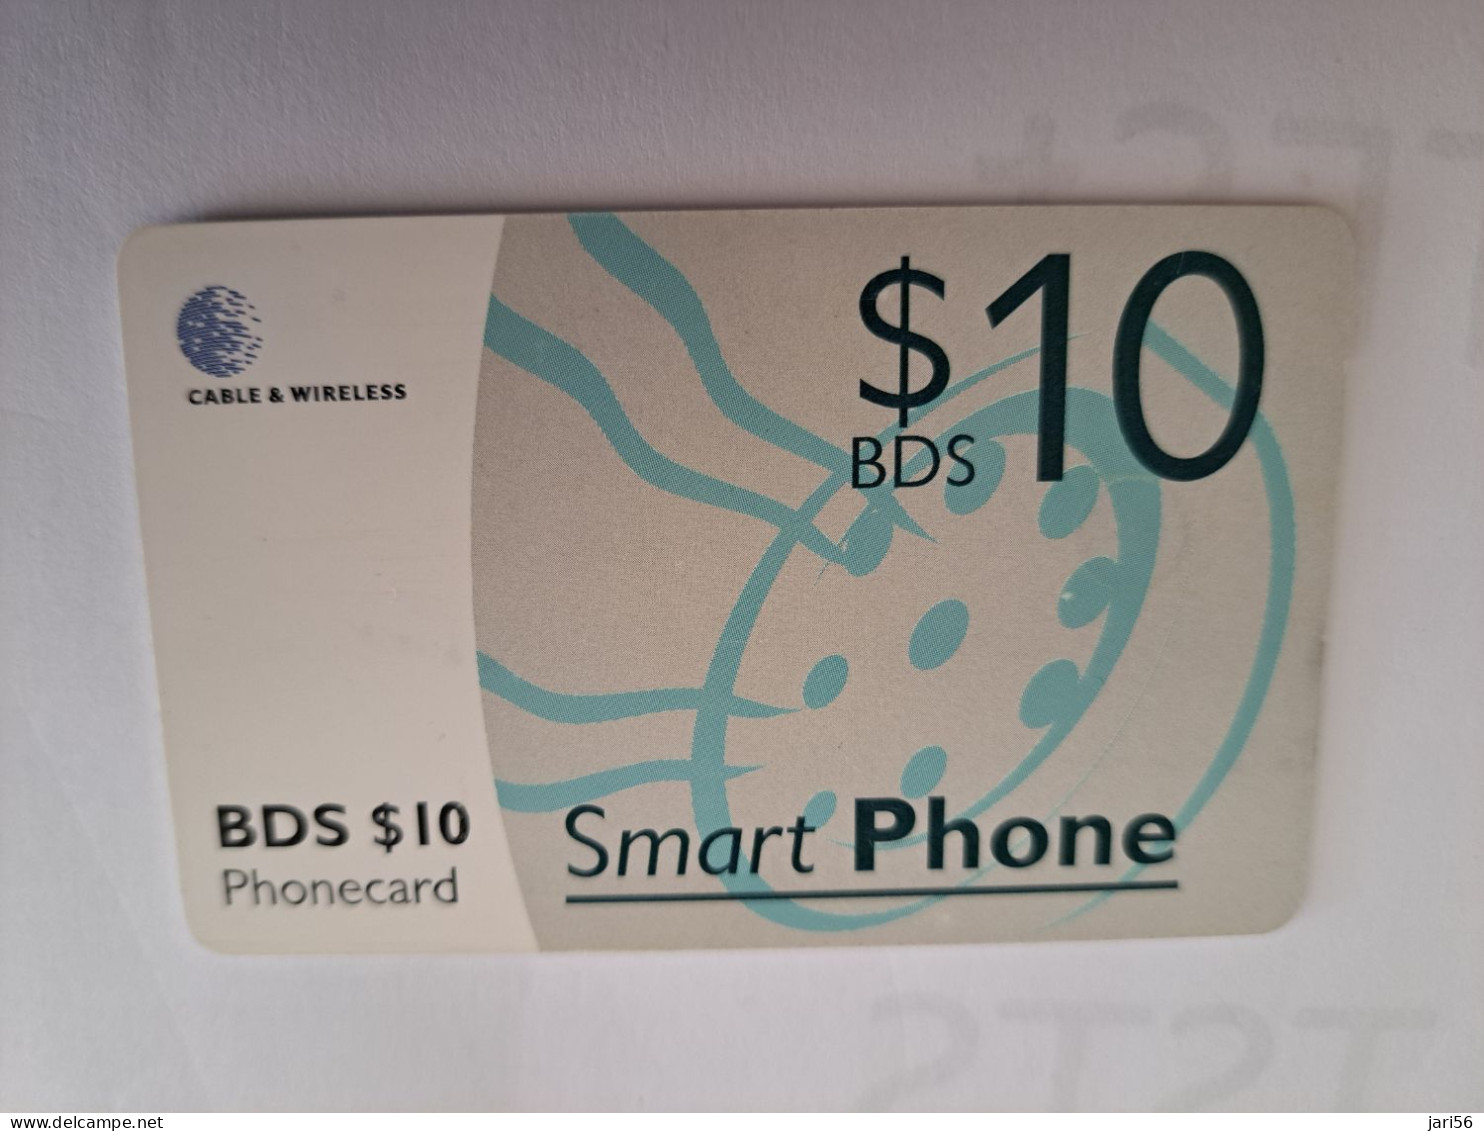 BARBADOS   $10- SMART PHONE  CHIPCARD  Fine Used Card  ** 16501** - Barbados